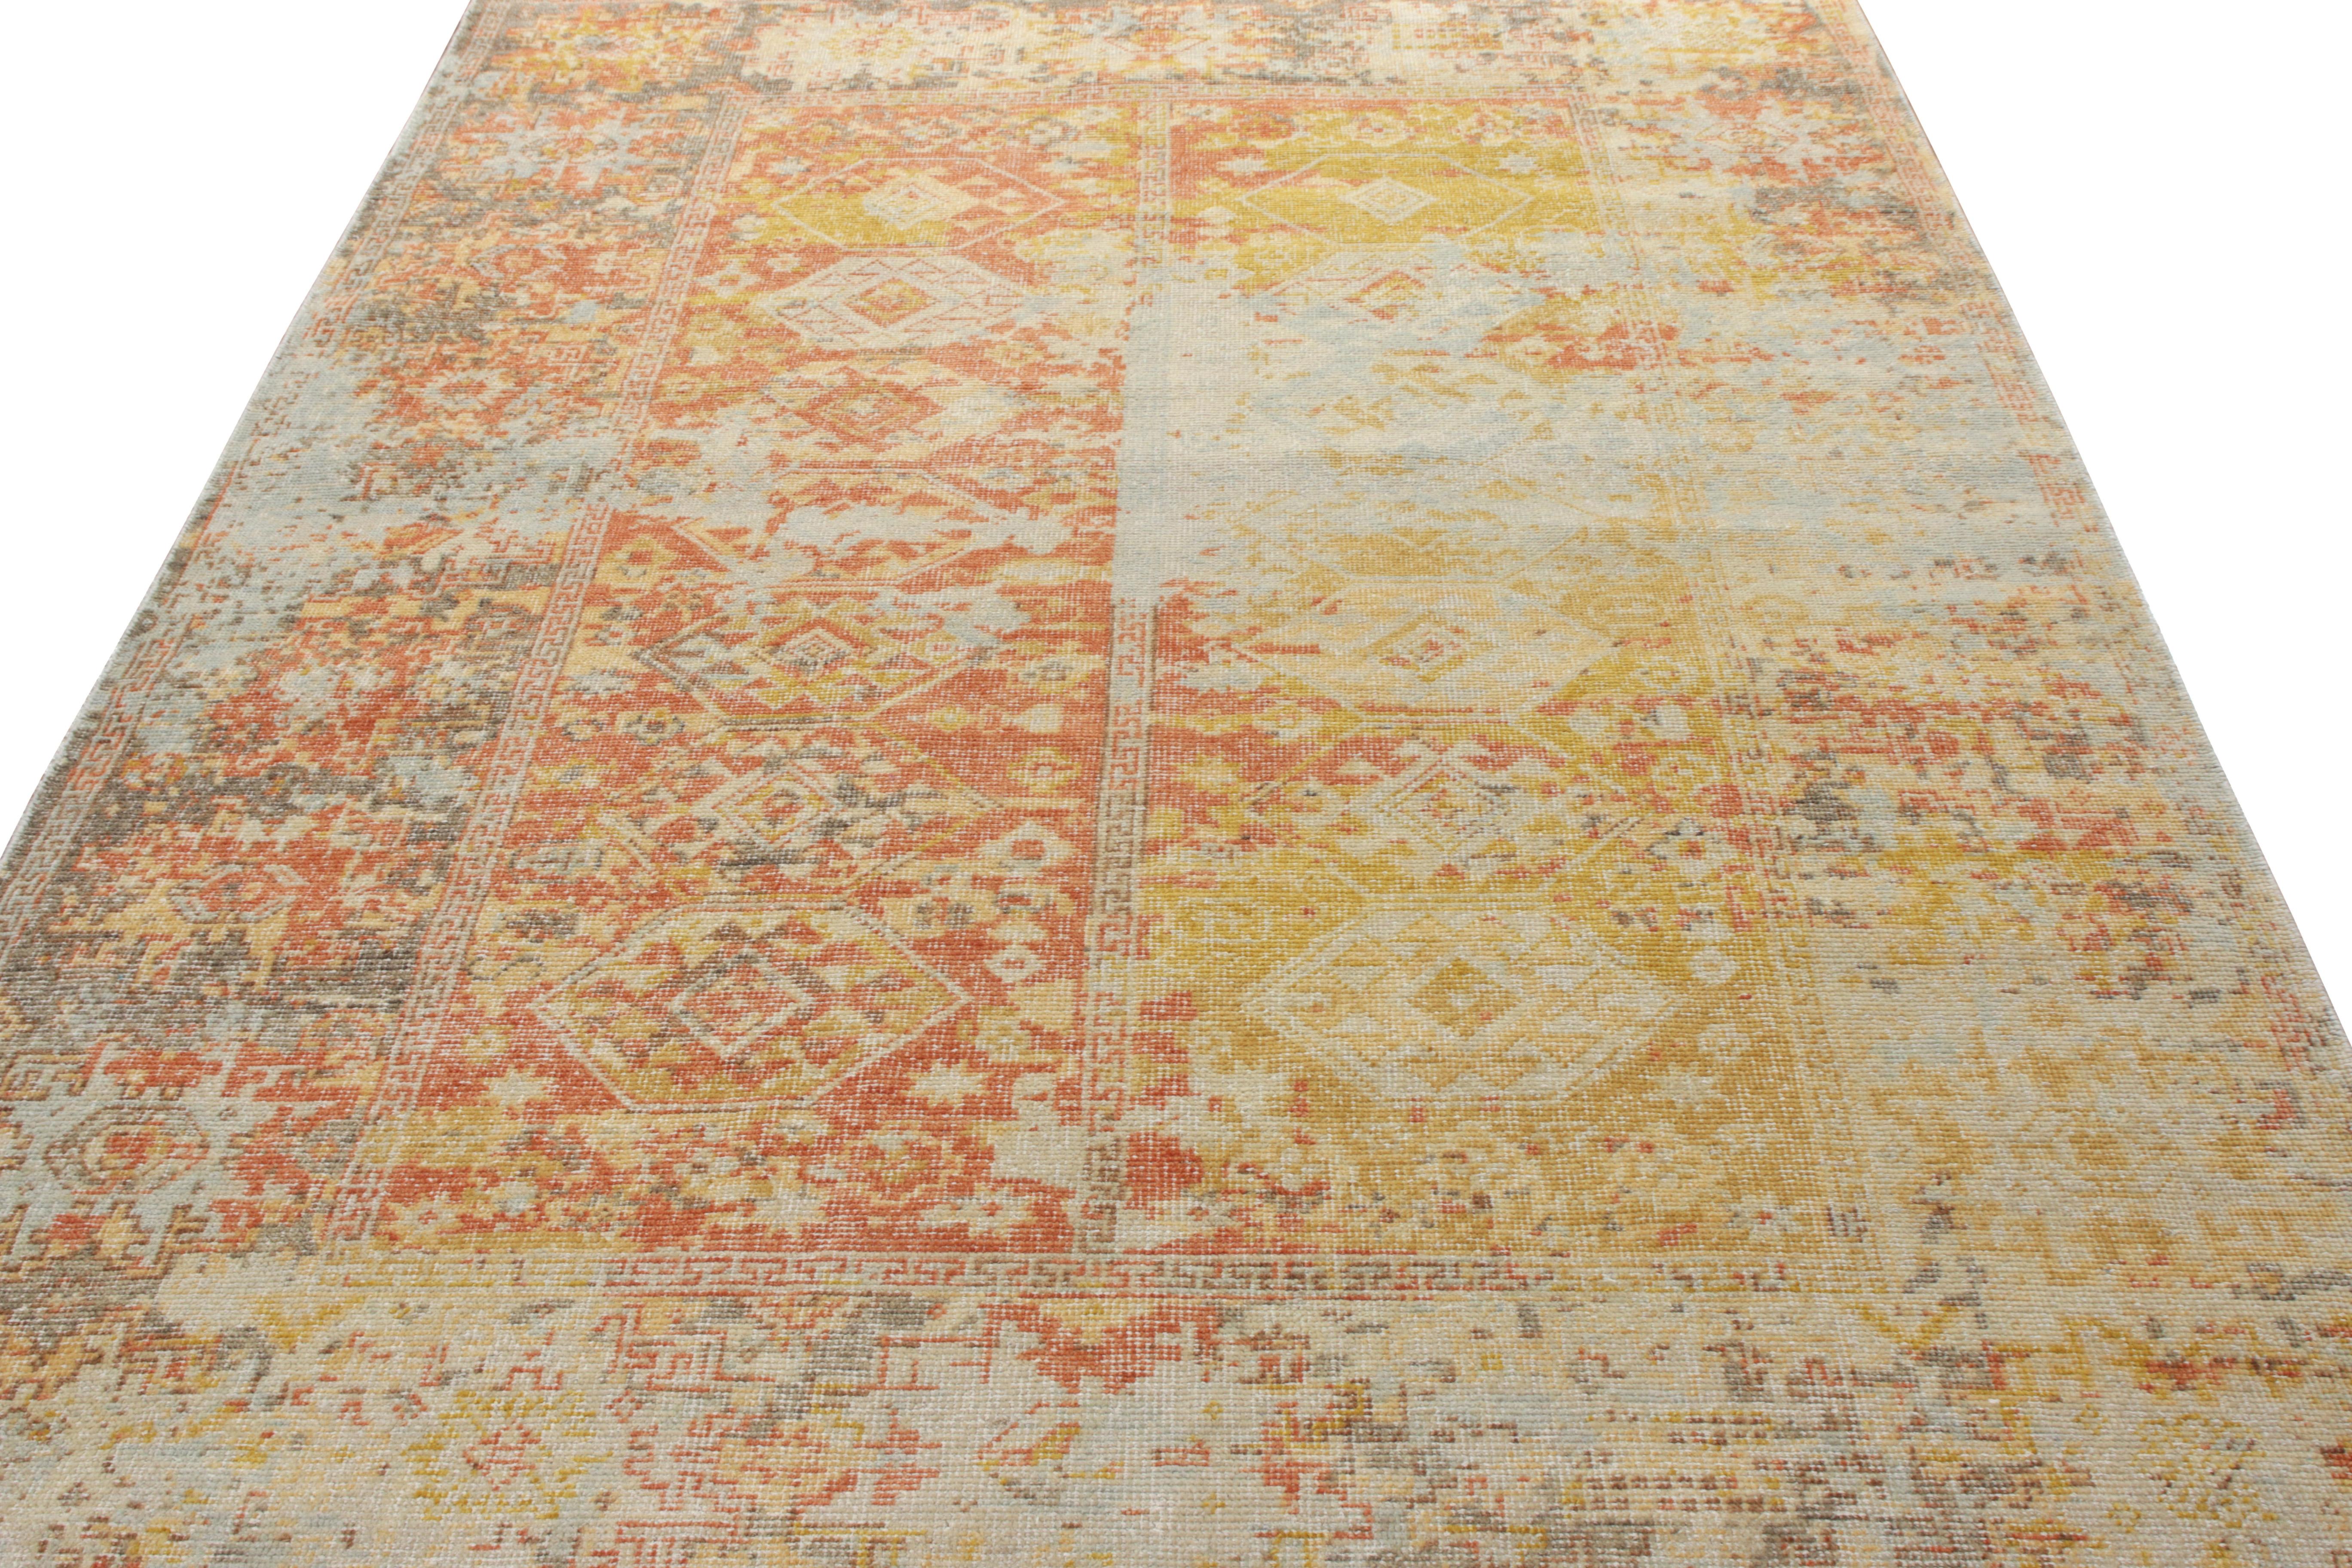 Rug & Kilim präsentiert diesen klassisch inspirierten Teppich aus der Homage-Kollektion, der mit einer einzigartigen Garnmischung hergestellt wurde. In dieser 6x9-Ausgabe zeigt der Teppich ein geometrisches Muster in einer markanten Farbkombination